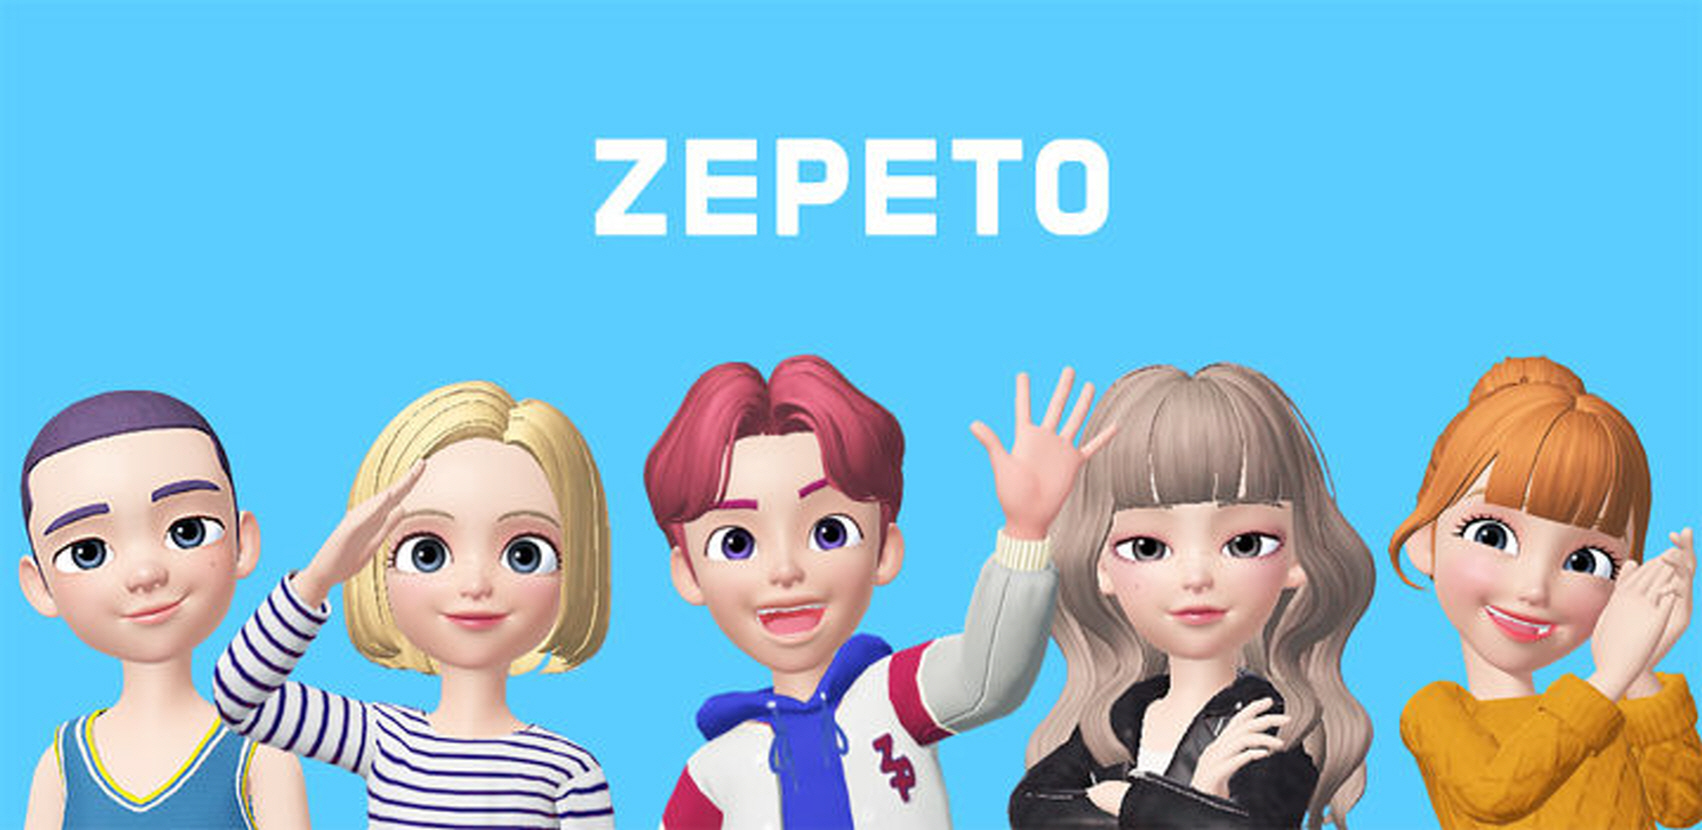 제페토 - ZEPETO PC 버전, 컴퓨터에서 설치하고 안전하게 즐기자 - 녹스 앱플레이어